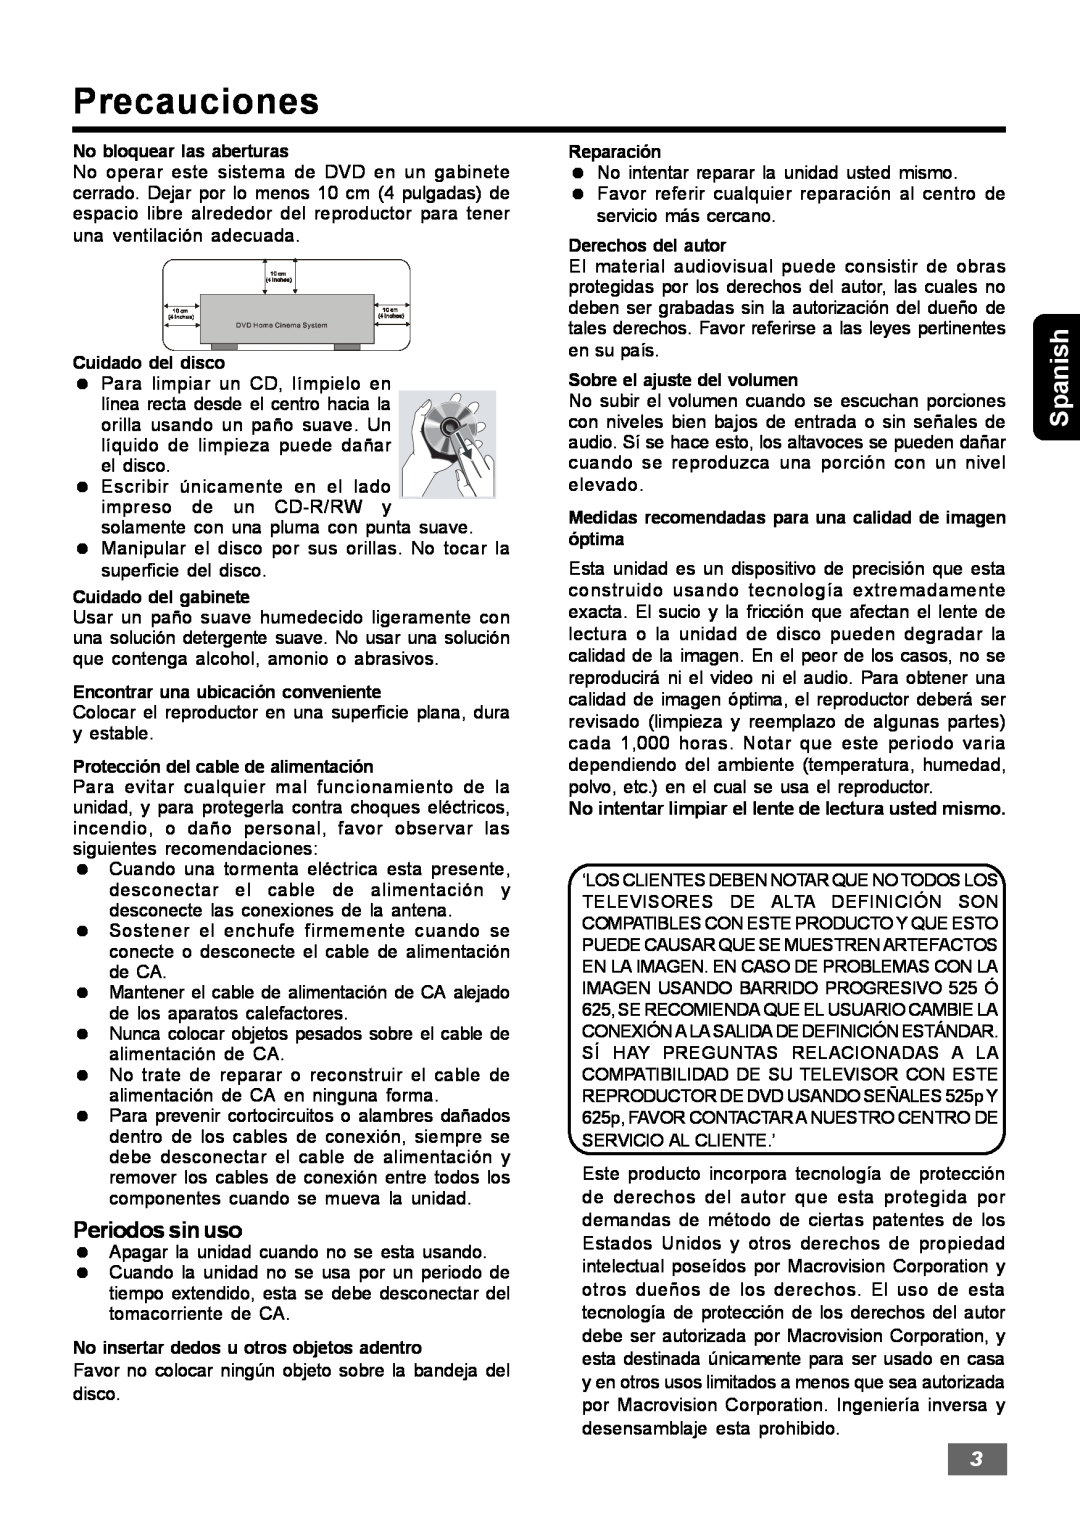 Insignia IS-HTIB102731 owner manual Precauciones, Periodos sin uso, Spanish 